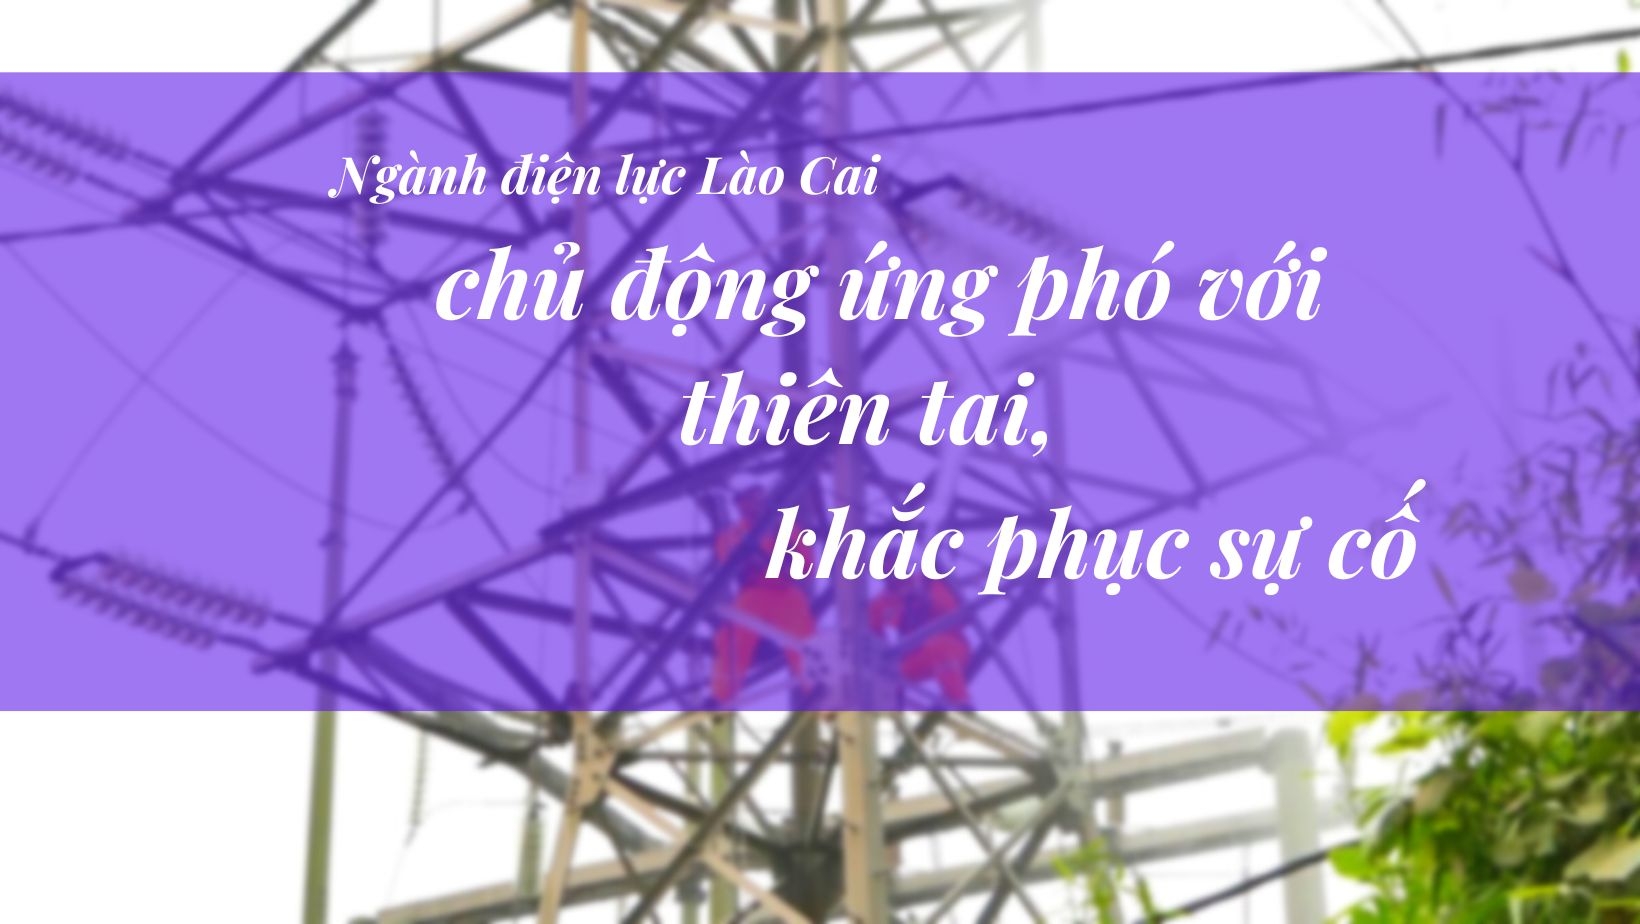 Ngành điện lực Lào Cai chủ động ứng phó với thiên tai, khắc phục sự cố